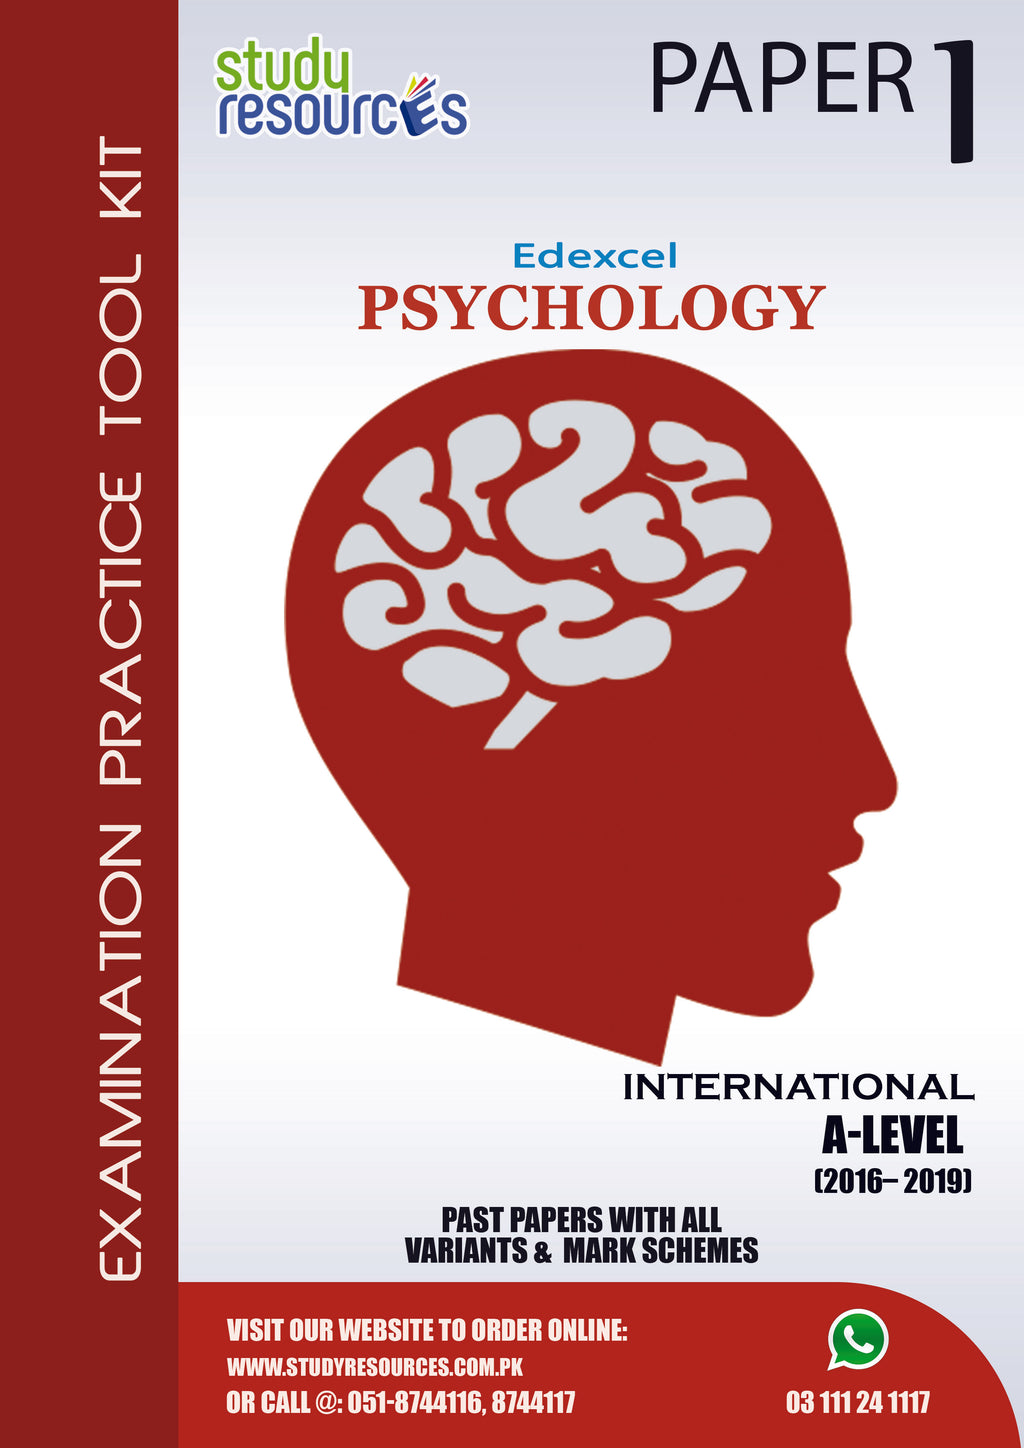 Edexcel A-Level Psychology P-1 Past Papers (2016-2019)